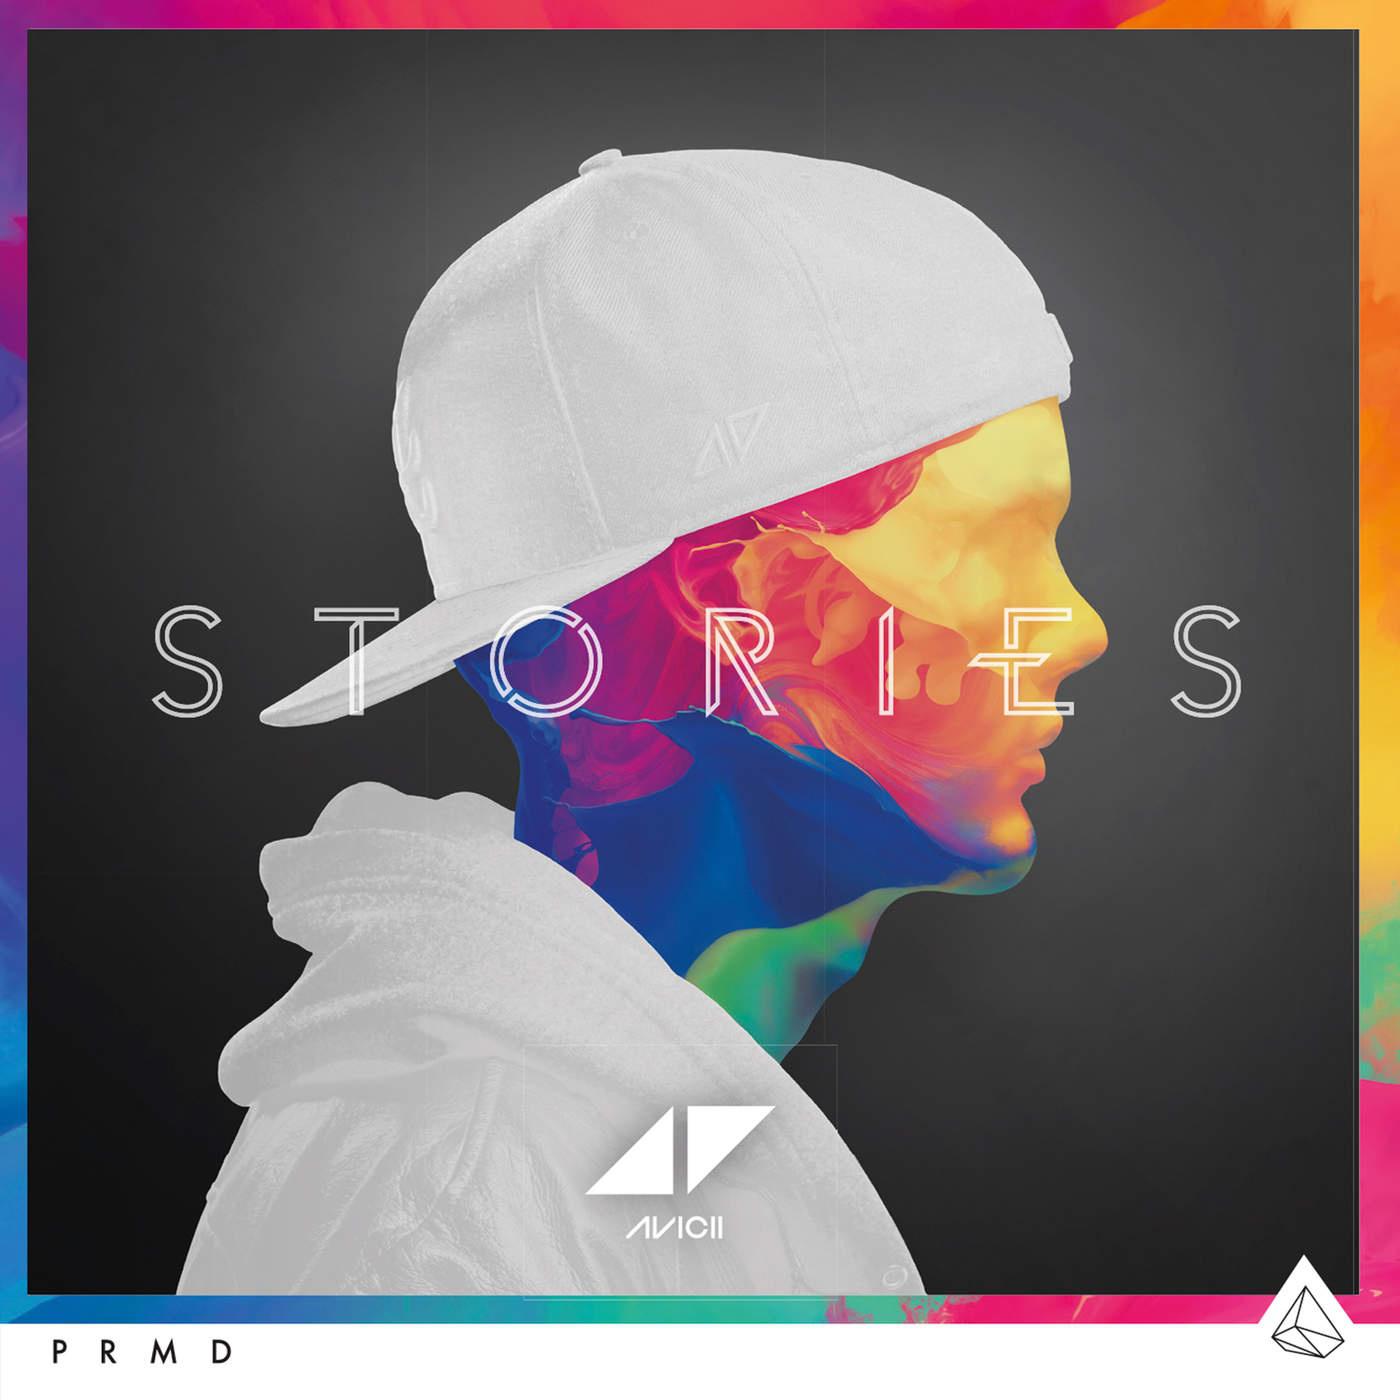 Broken Arrows歌词 歌手Avicii / Zac Brown-专辑Stories-单曲《Broken Arrows》LRC歌词下载